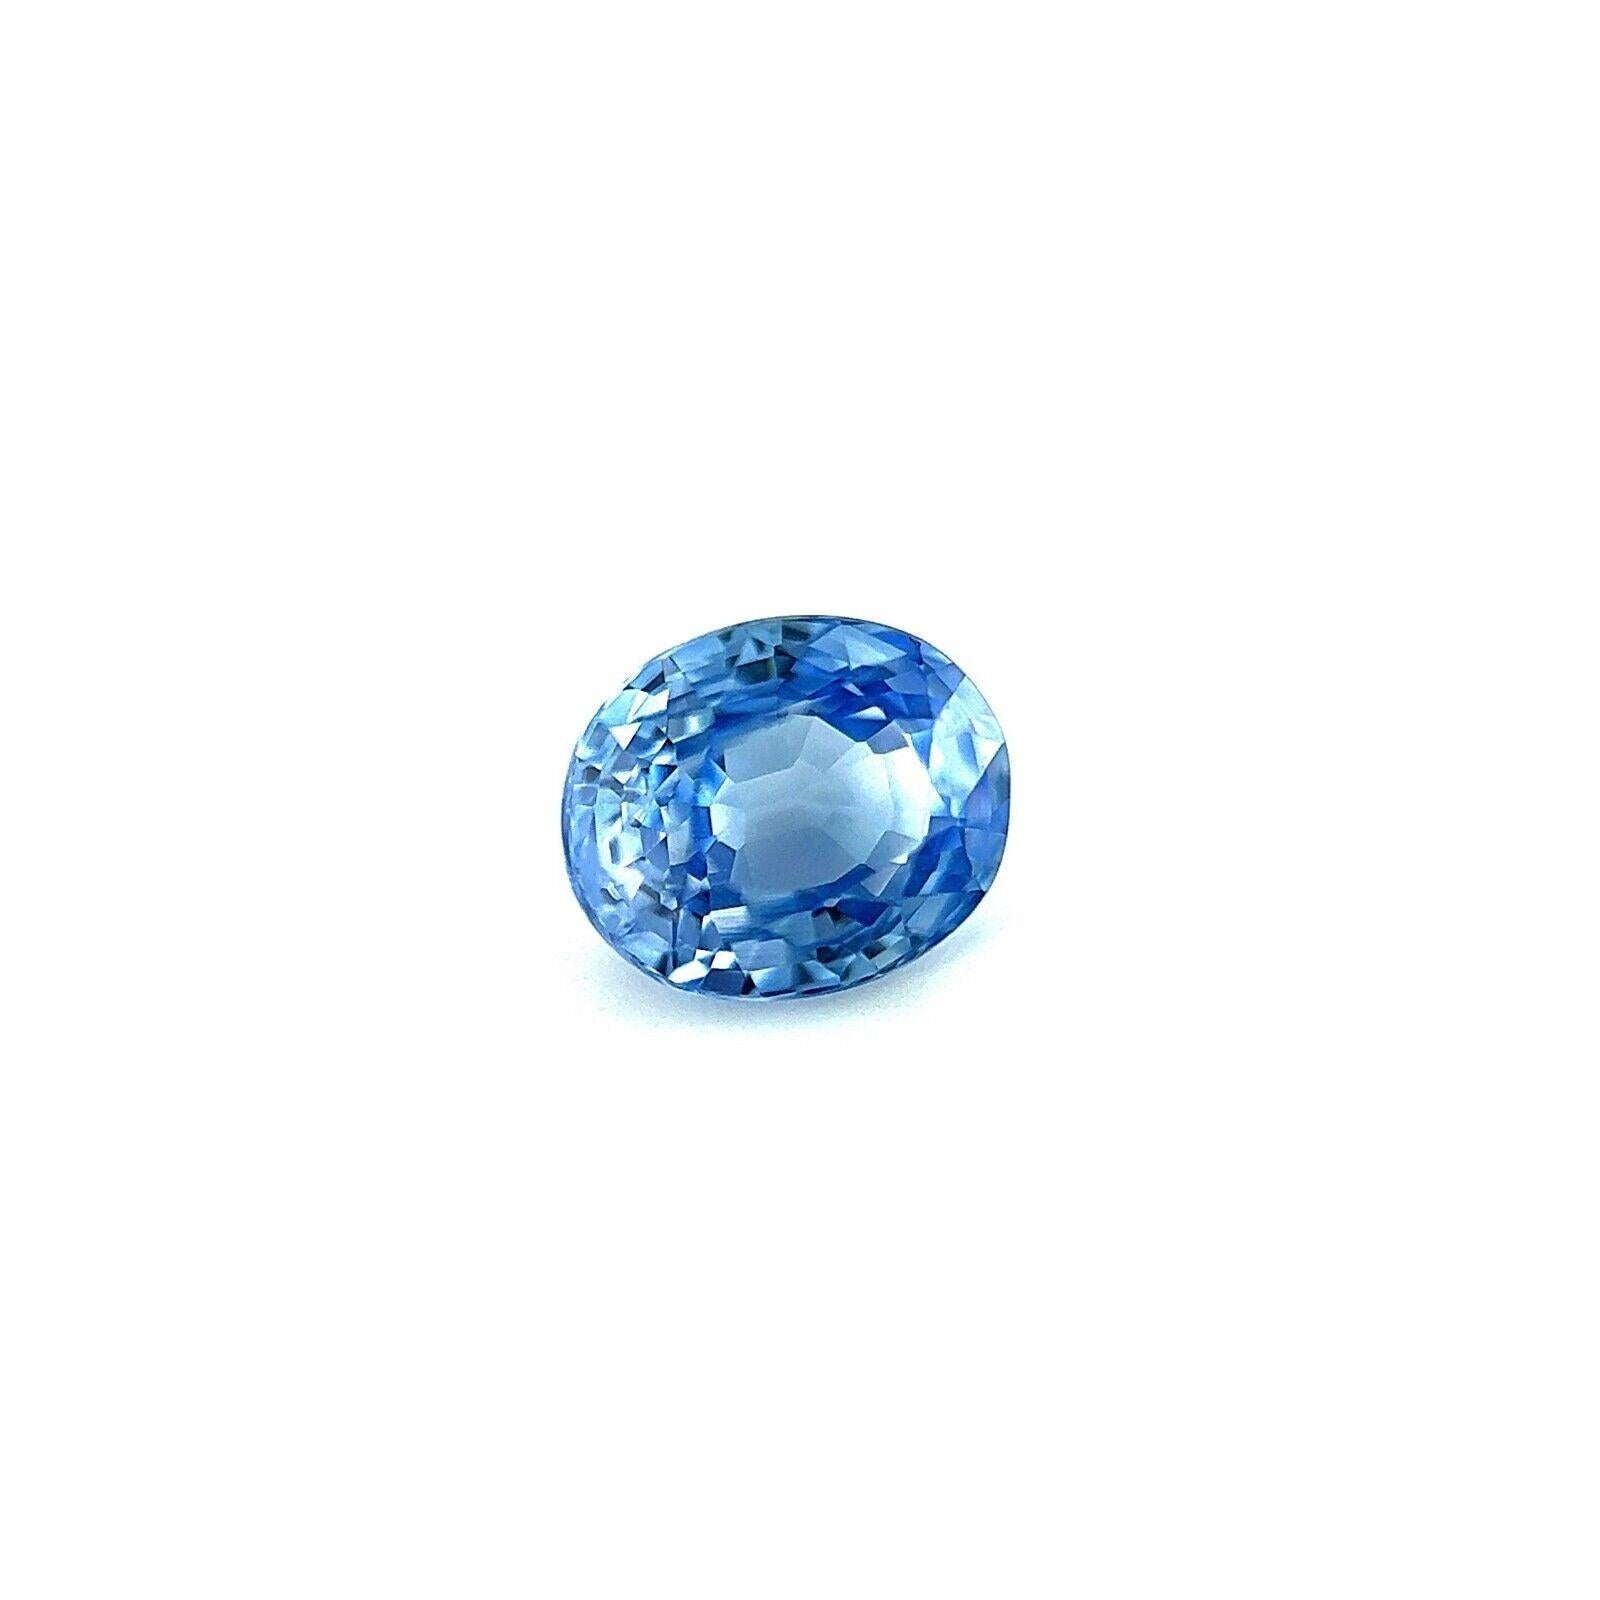 Fine saphir de Ceylan bleu vif 0,89ct taille ovale, gemme rare en vrac 5,8x4,8mm VVS

Fine pierre précieuse saphir bleu de Ceylan.
0,89 carat avec une belle couleur bleue et une excellente clarté, VVS.
Il présente également une excellente coupe